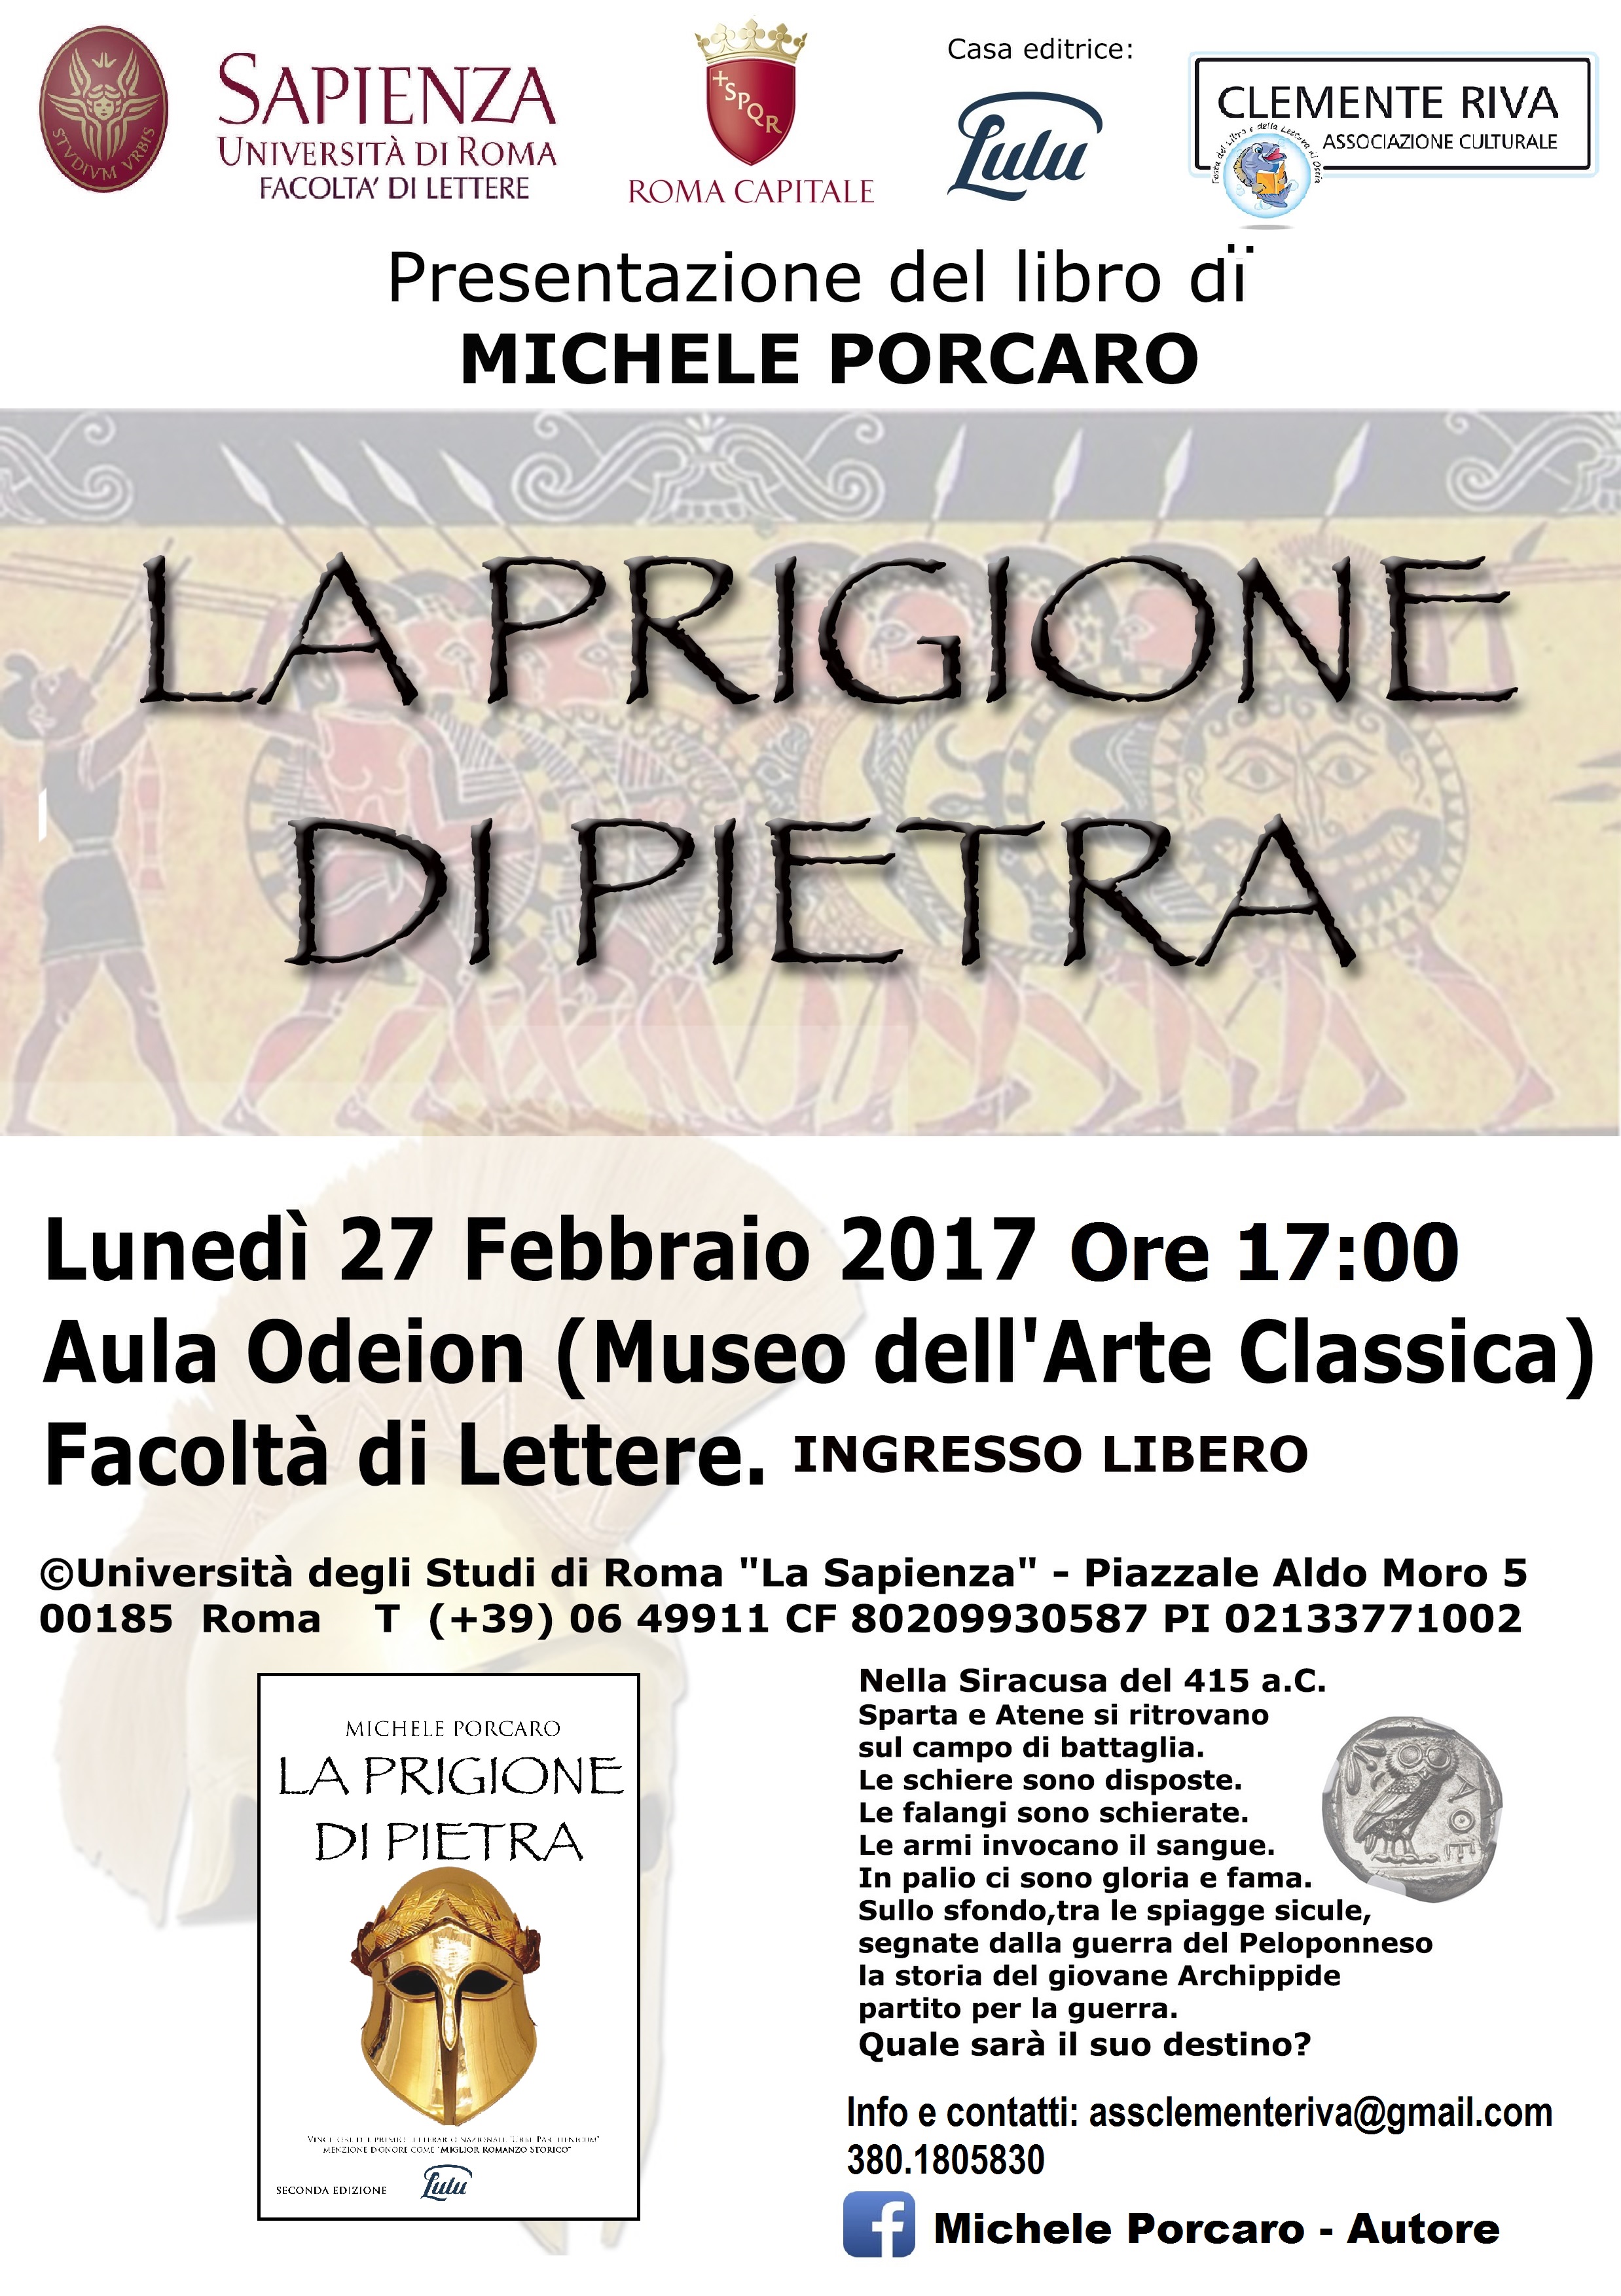 La prigione di pietra, presentazione presso la sala Odeion della facoltà di Lettera a La Sapienza di Roma